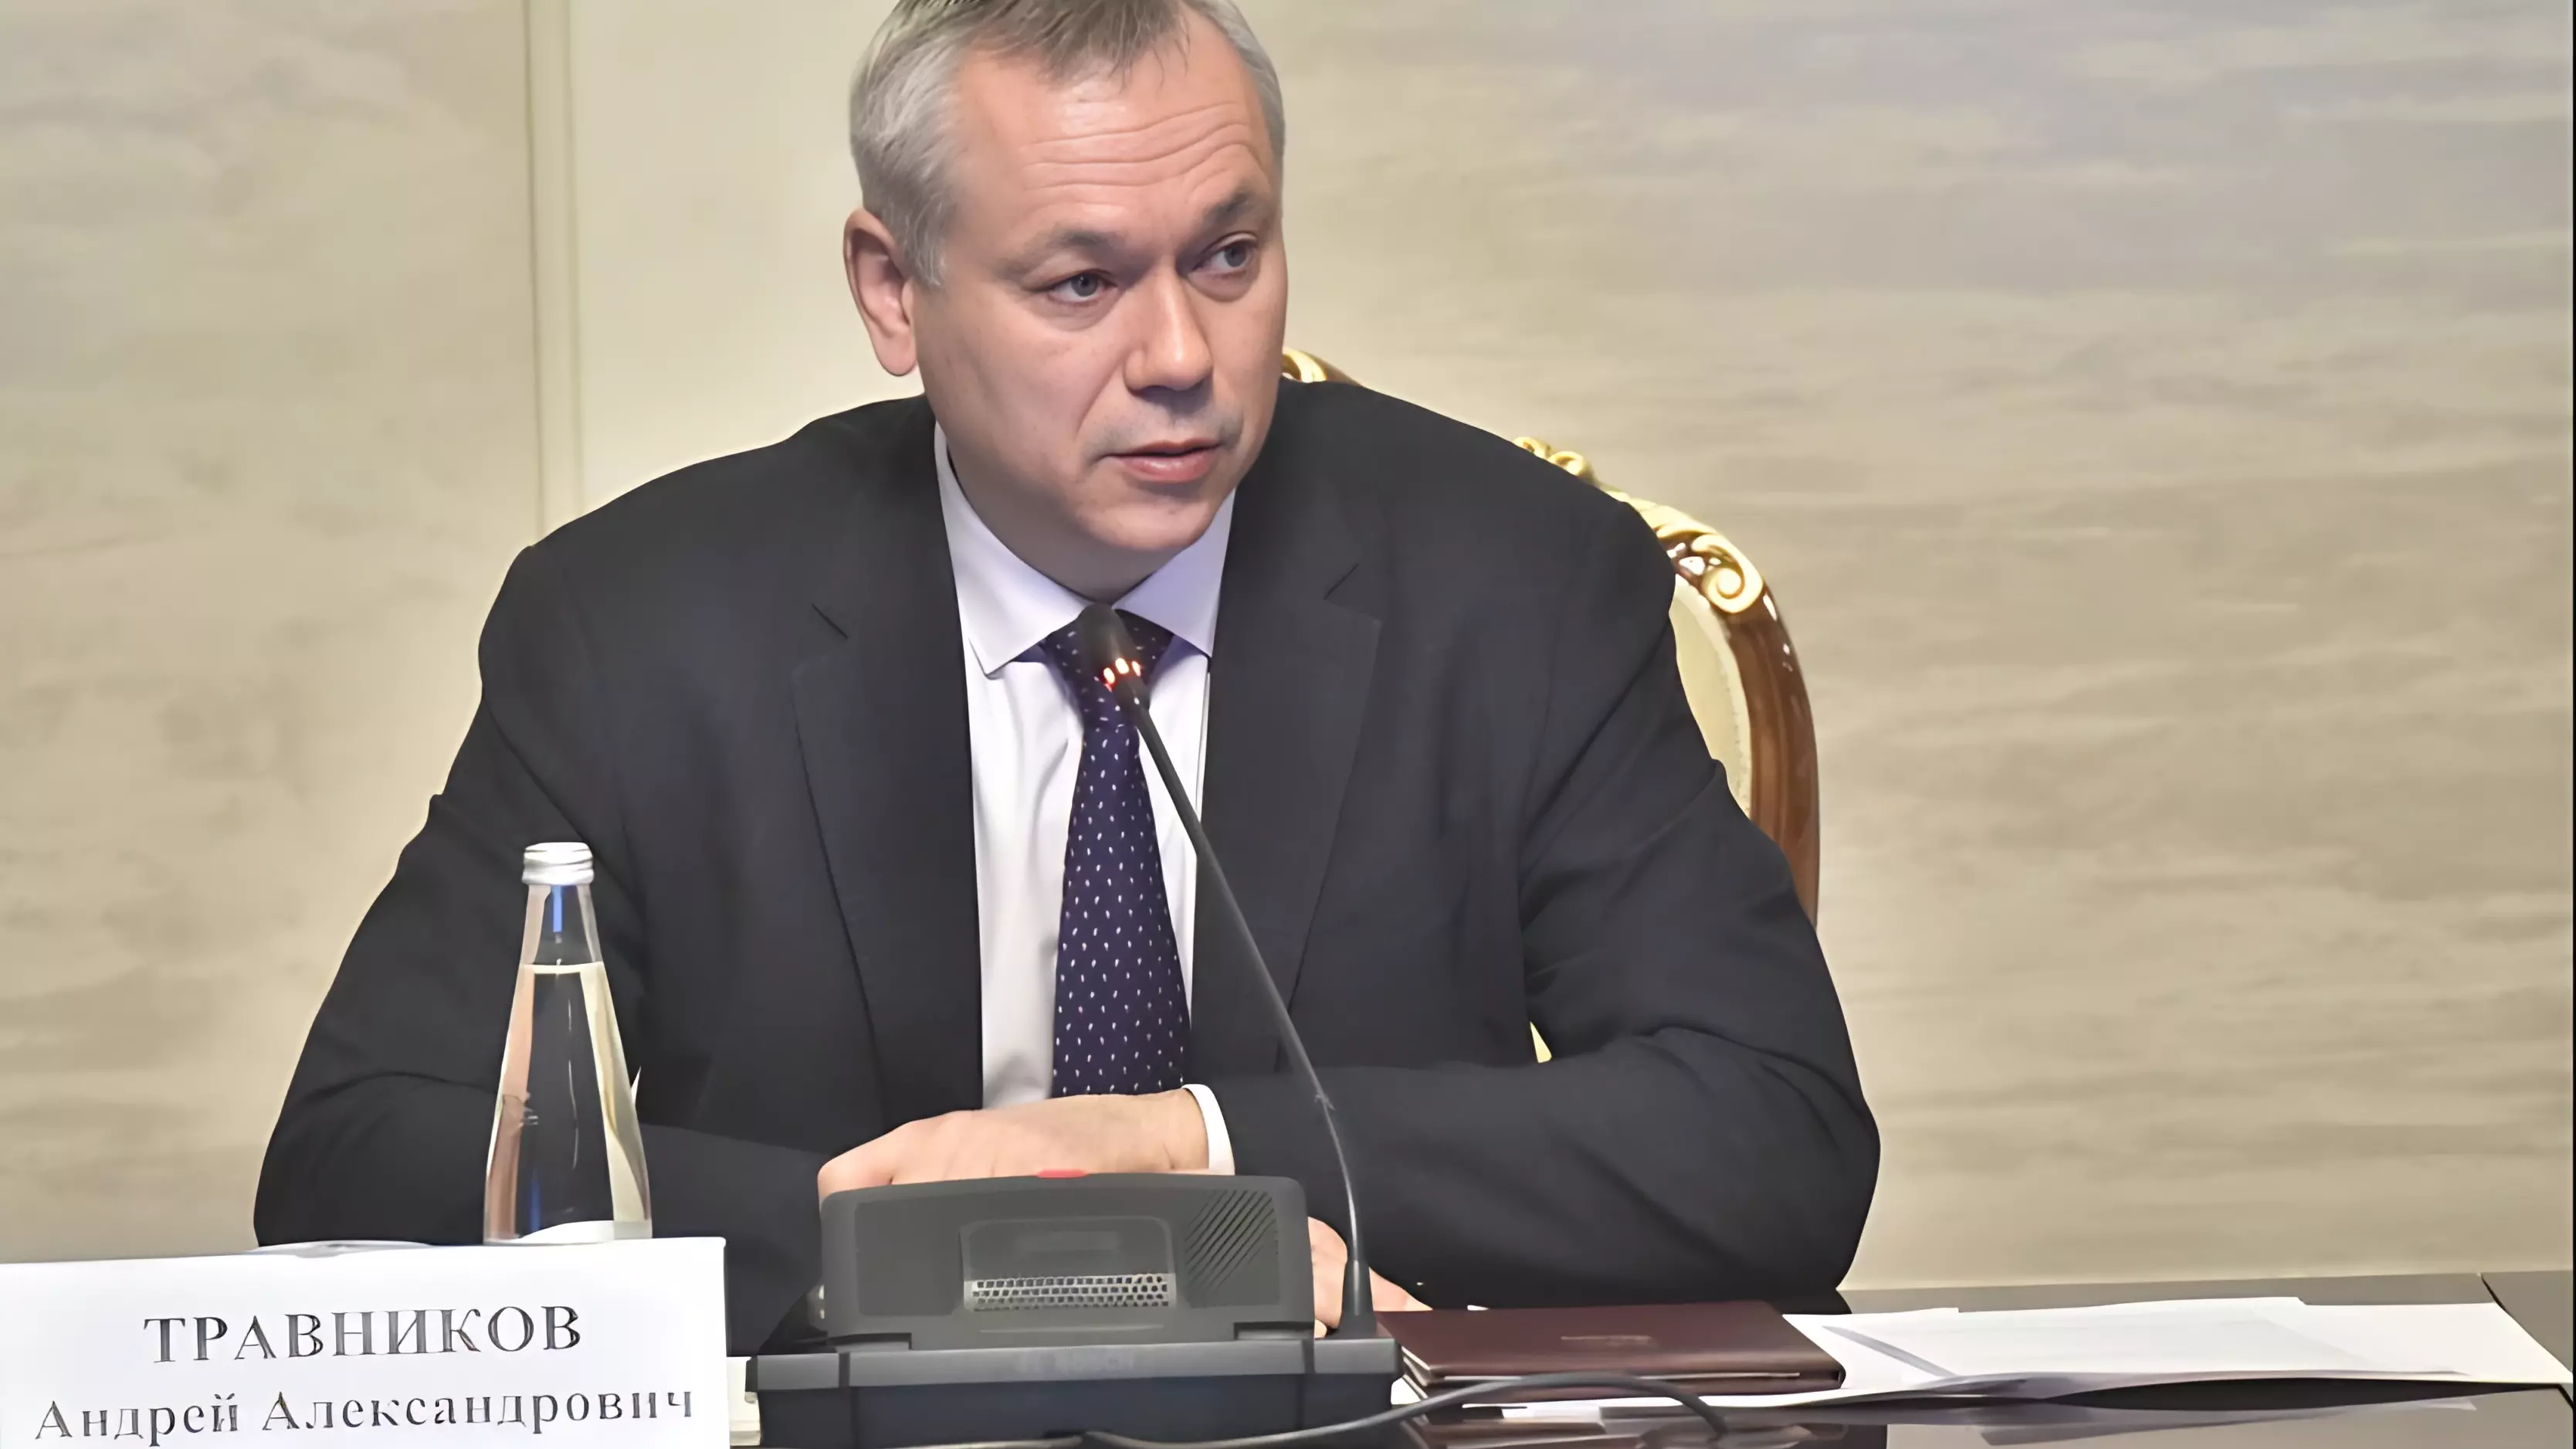 Андрей Травников: программа строительства служебного жилья в регионе будет продолжена